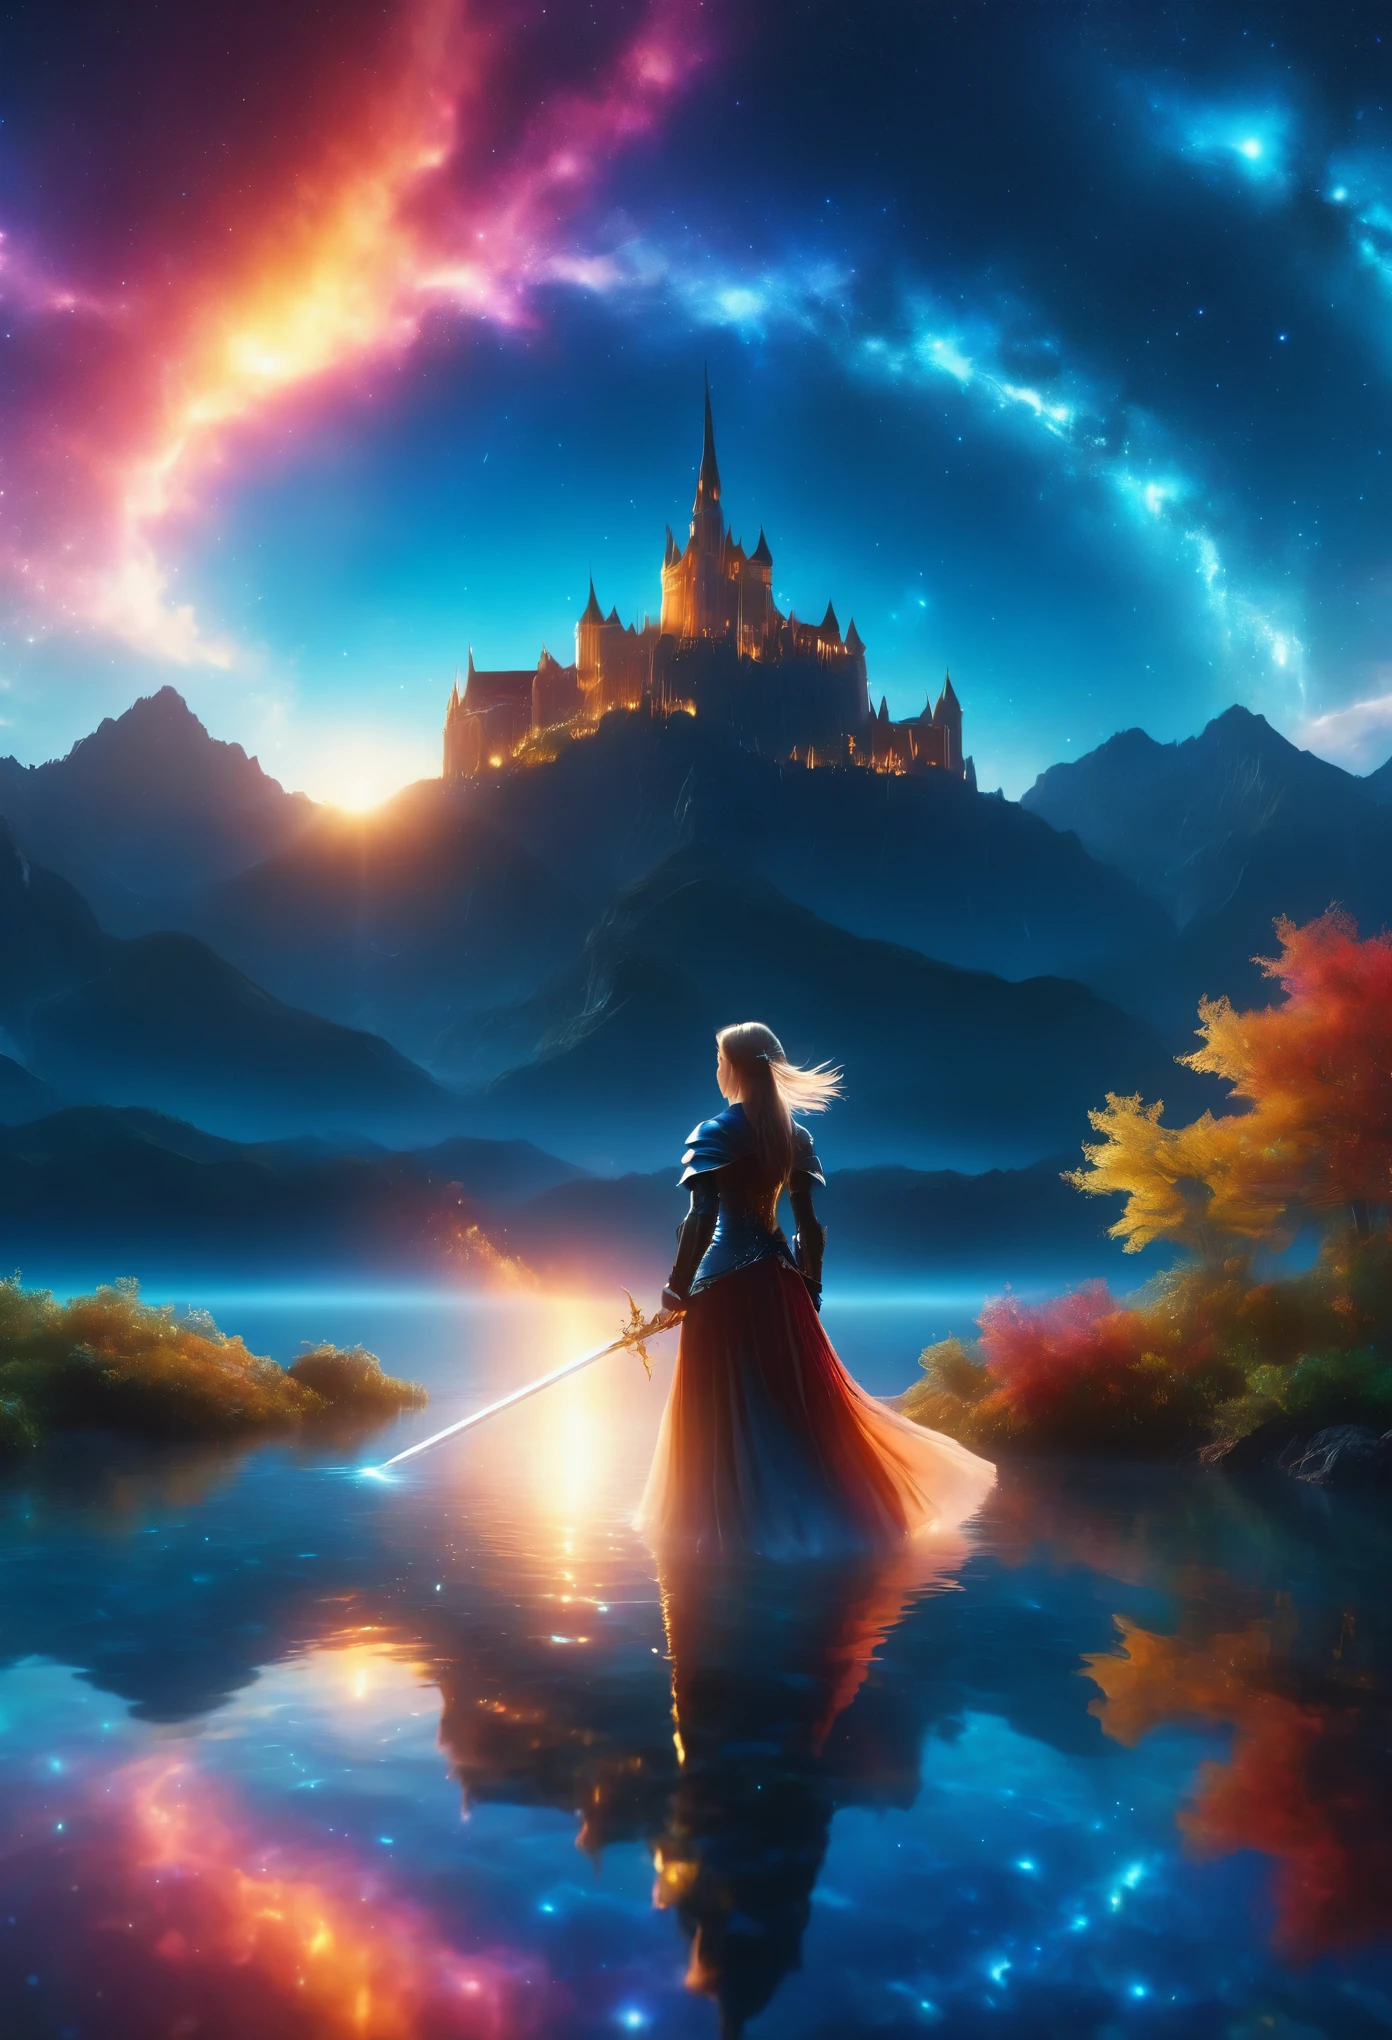 (8k, la plus haute qualité, chef-d&#39;œuvre, Style Final Fantasy: 1.2), (Irréaliste, photoréaliste: 1.37), (une dame mage debout au bord du lac, énorme buste rebondissant, Couvrez tout votre corps de lumière, avec l&#39;épée avec le feu, Son épée brille dans les cieux:1.1), paysage de rêve, fantaisie, Des paysages irréels, Super détaillé, Château médiéval volant, Île flottante dans le ciel, Tourbillon de lumière à sept couleurs, (流星のM.Un oiseau brillant à longue queue vole dans le ciel:1.3), Aurore, Des éclairs intenses, voie Lactée, lumière complexe, M.々Lumière colorée, grand lac, Ciel étoilé reflété à la surface du lac, D&#39;innombrables étoiles brillantes, météores, De nombreux météores, Aura de, (Un pilier de lumière émanait du sol:1,2), 複雑な文M.cercle magique,